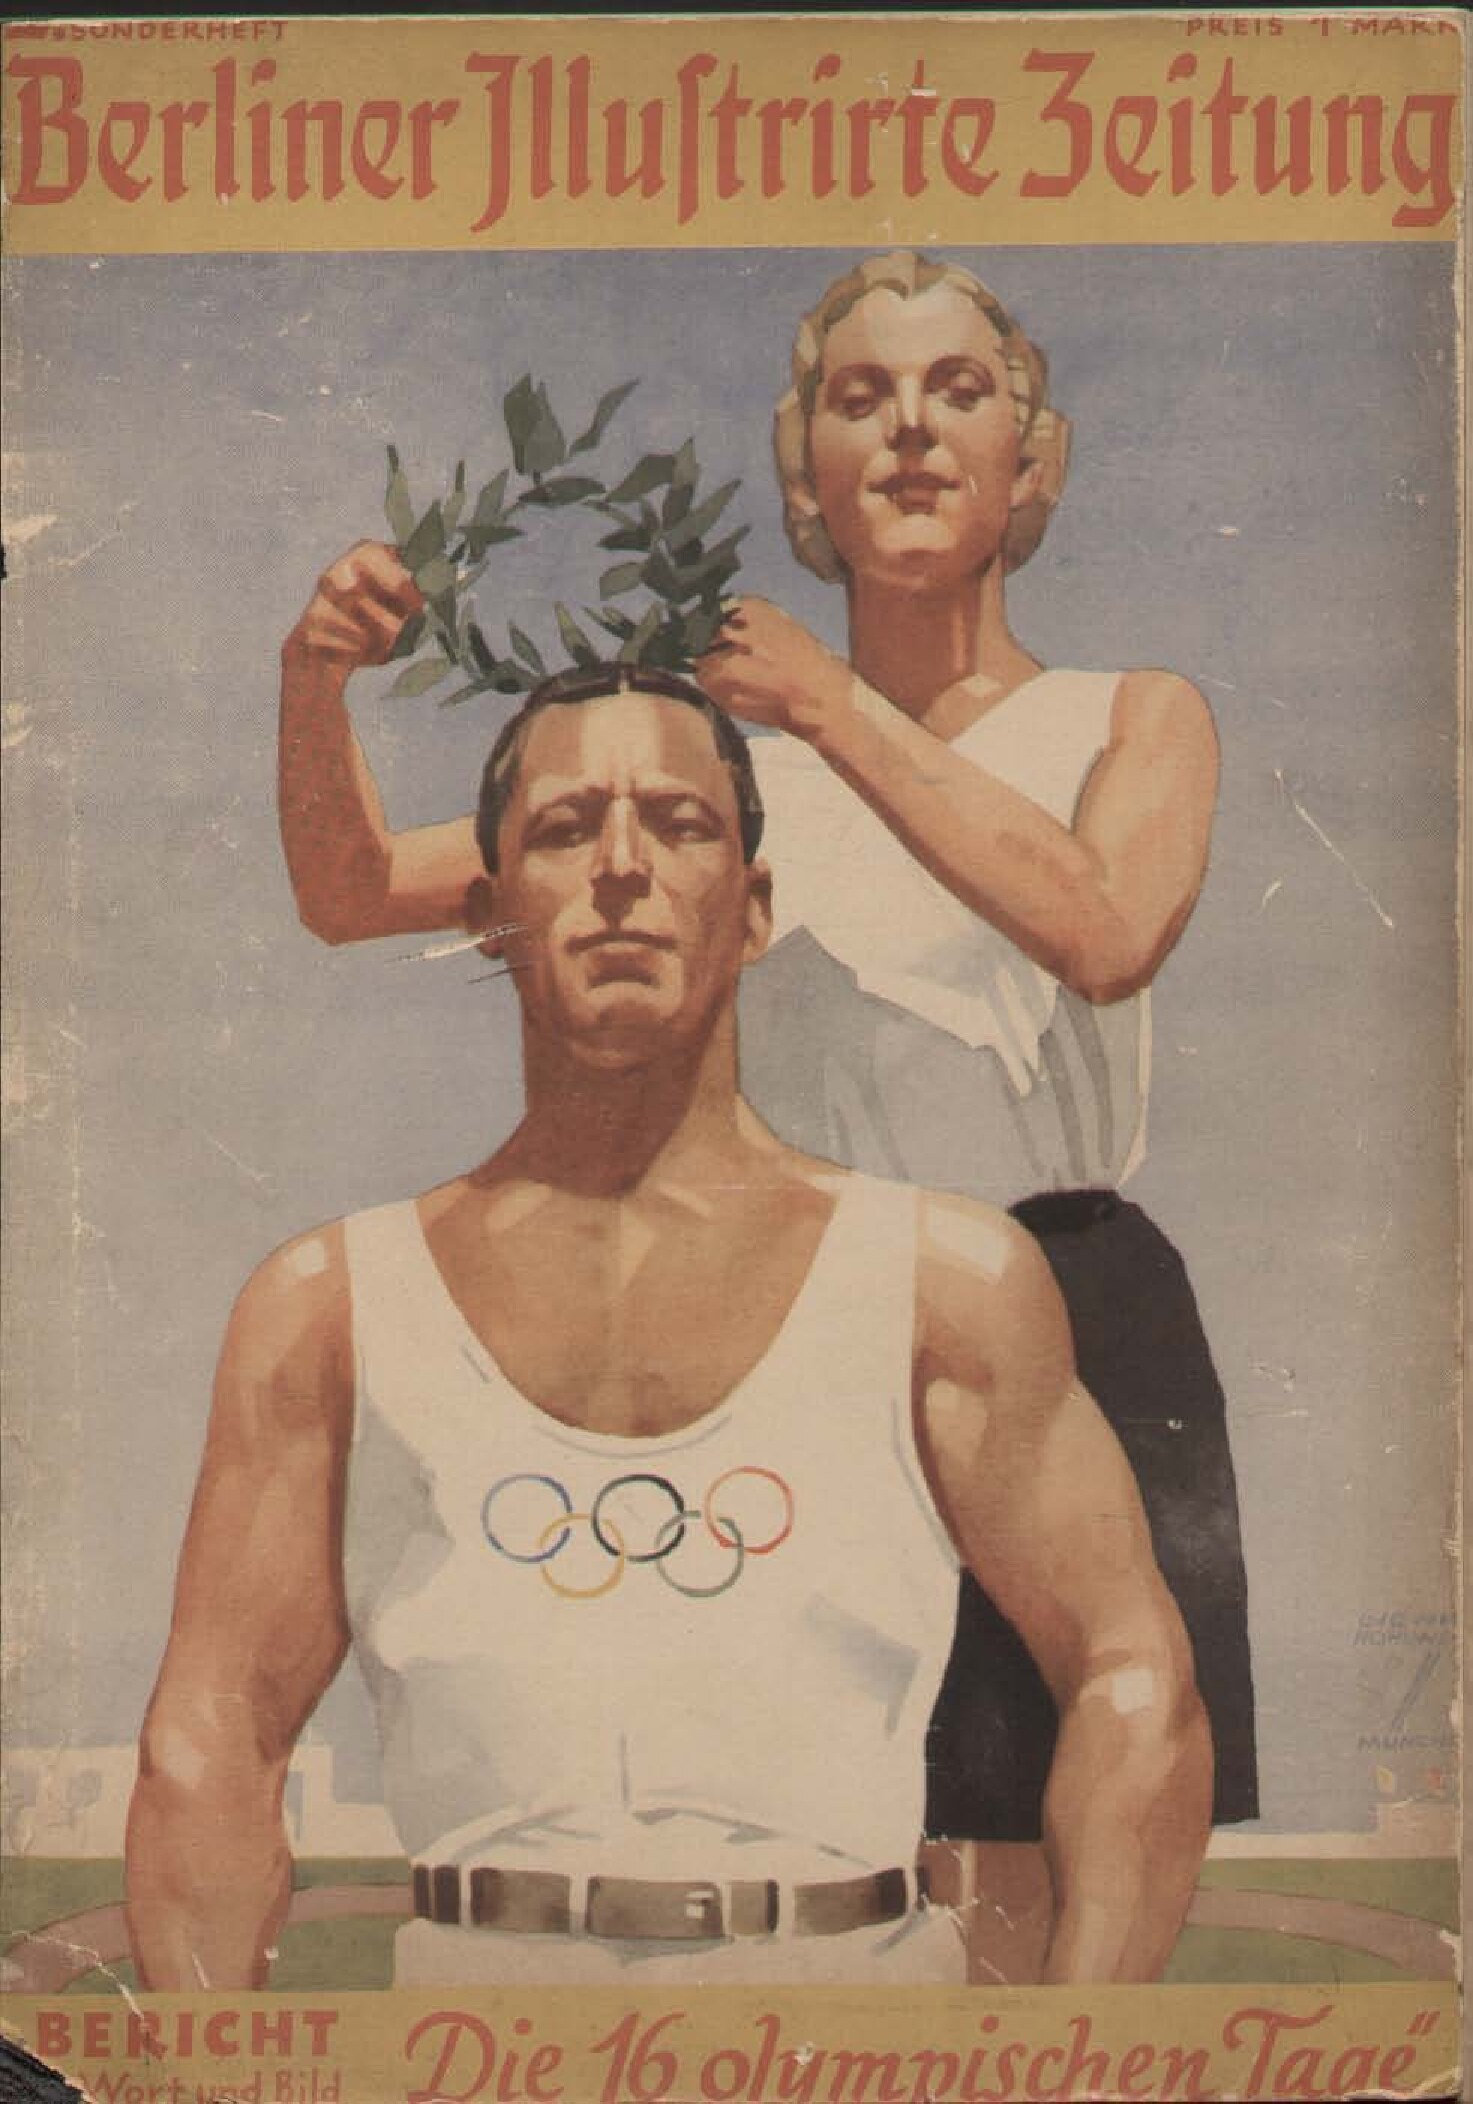 Die 16 olympischen Tage (1936, 98 S., Scan, Fraktur)